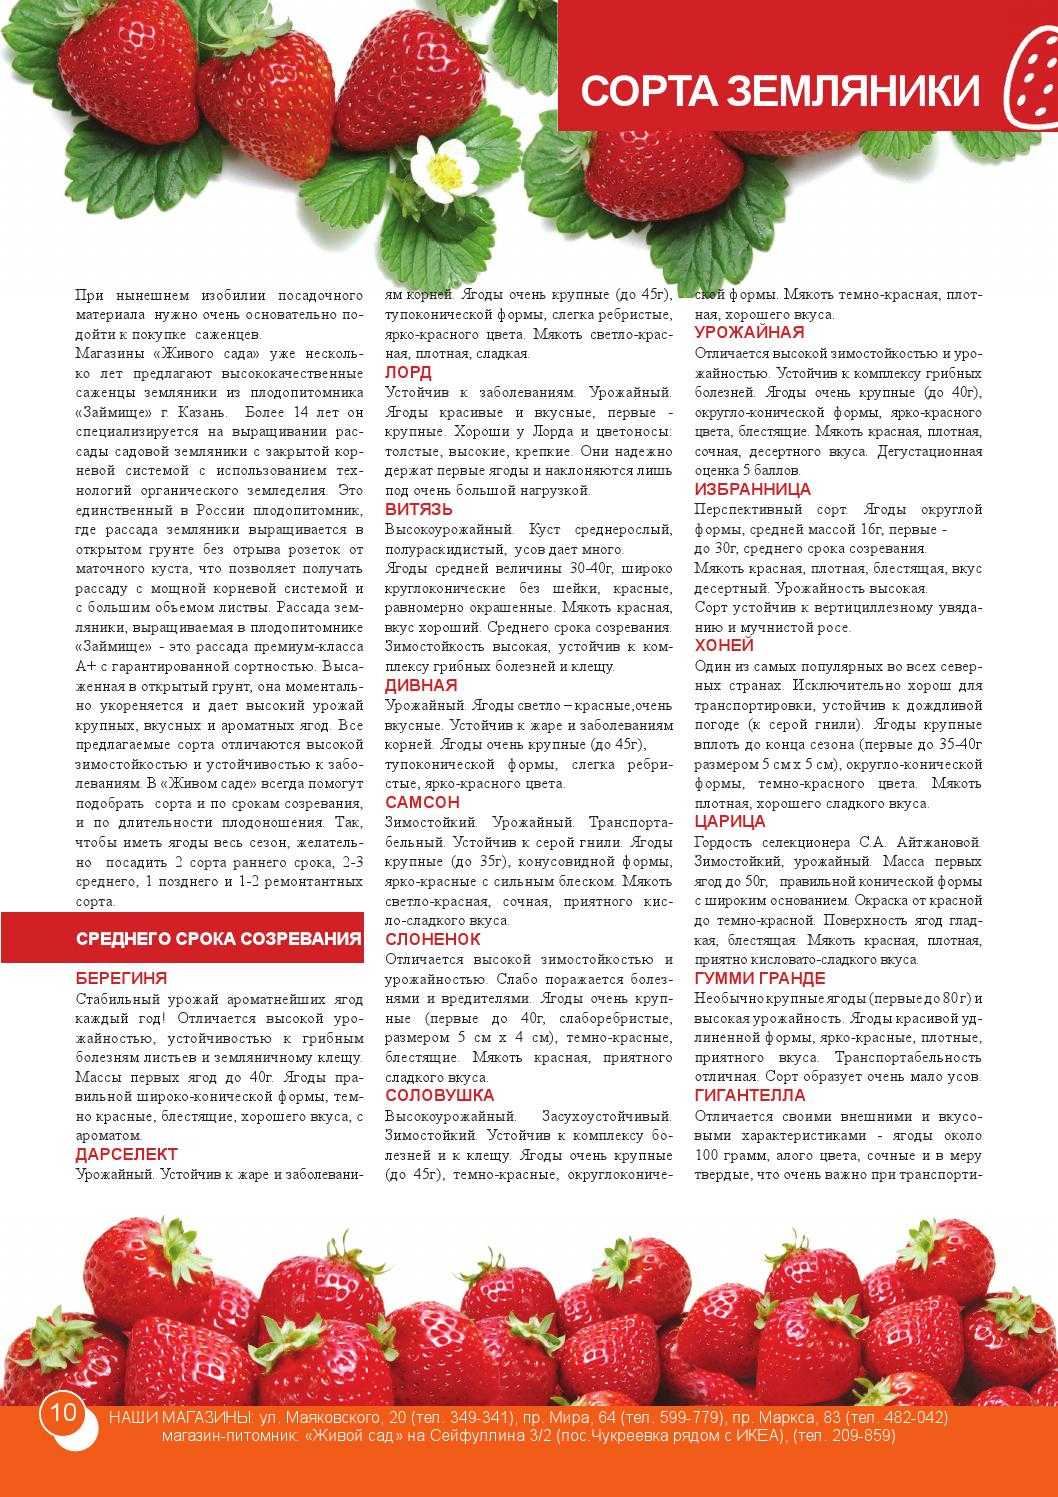 Как сделать облепиховое масло в домашних условиях: рецепты из жмыха, косточек, сока и замороженных ягод, полезные свойства продукта + отзывы% - recipes365.ru